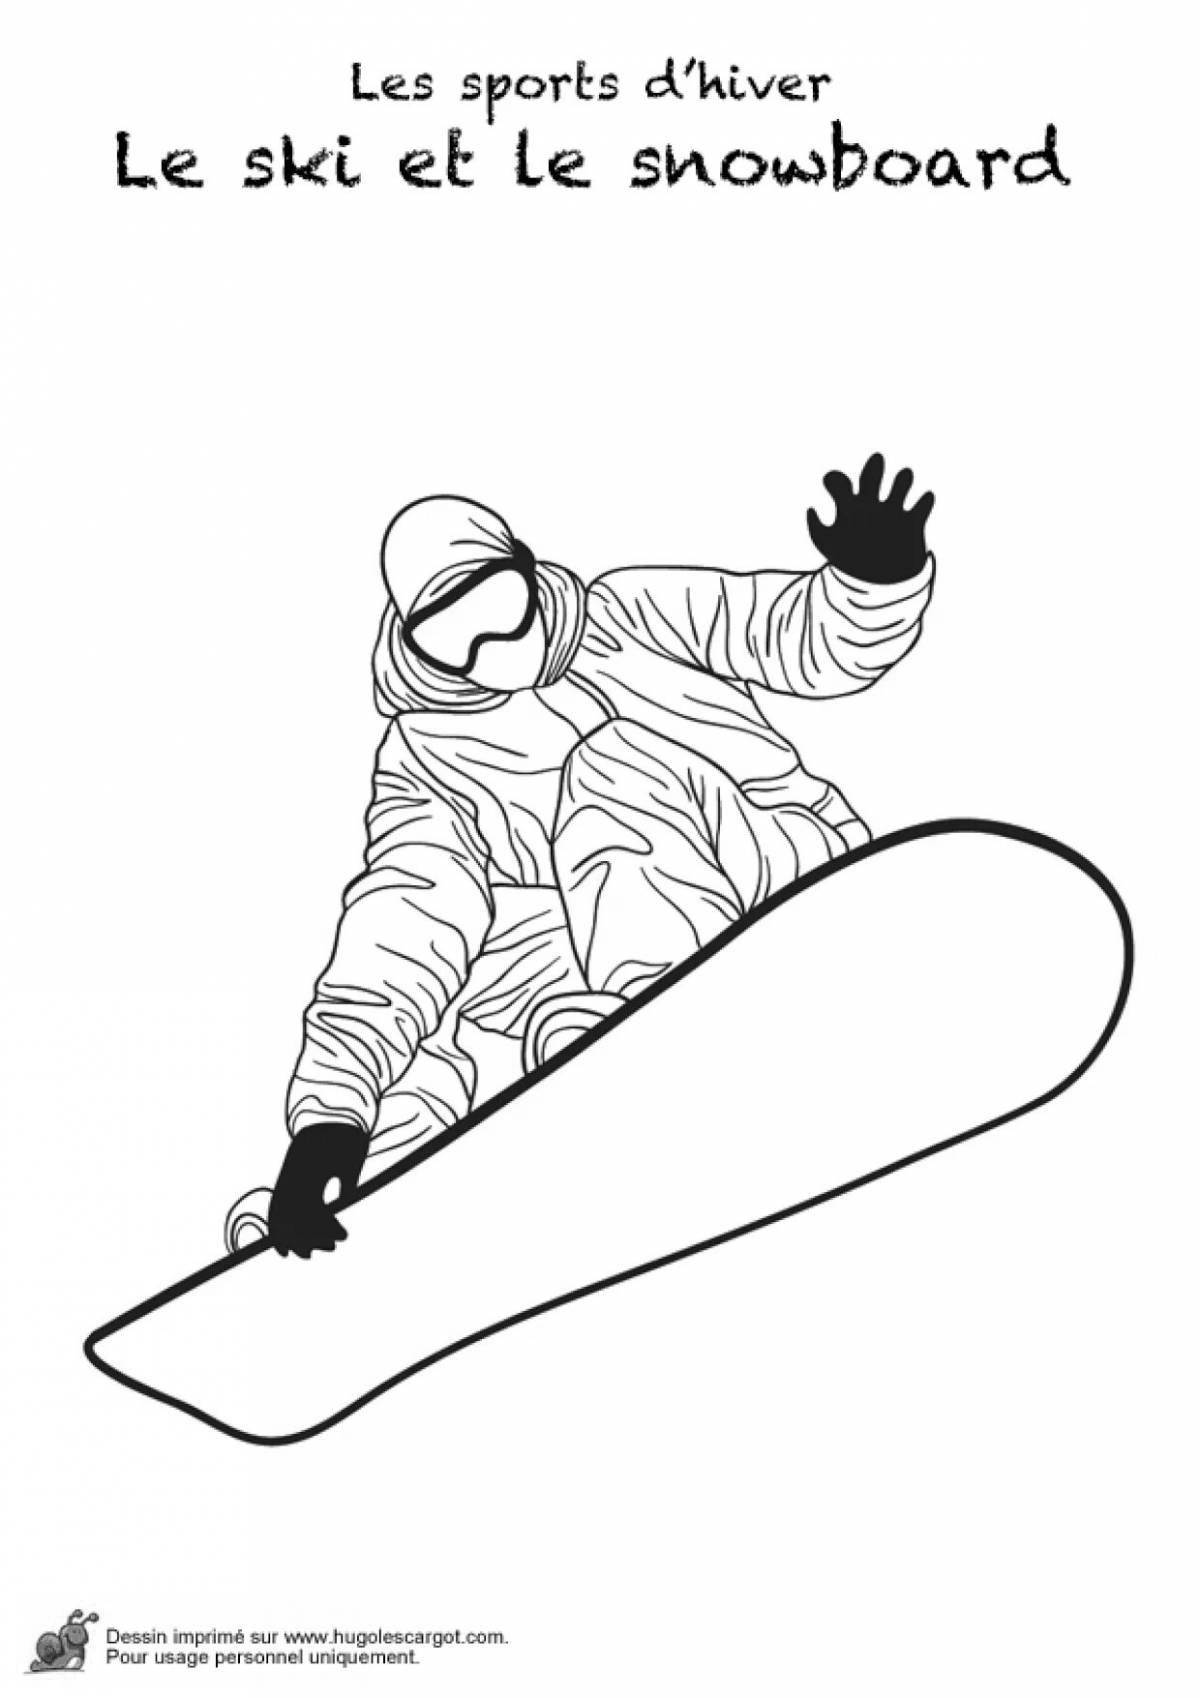 Смелый сноубордист раскраски для детей